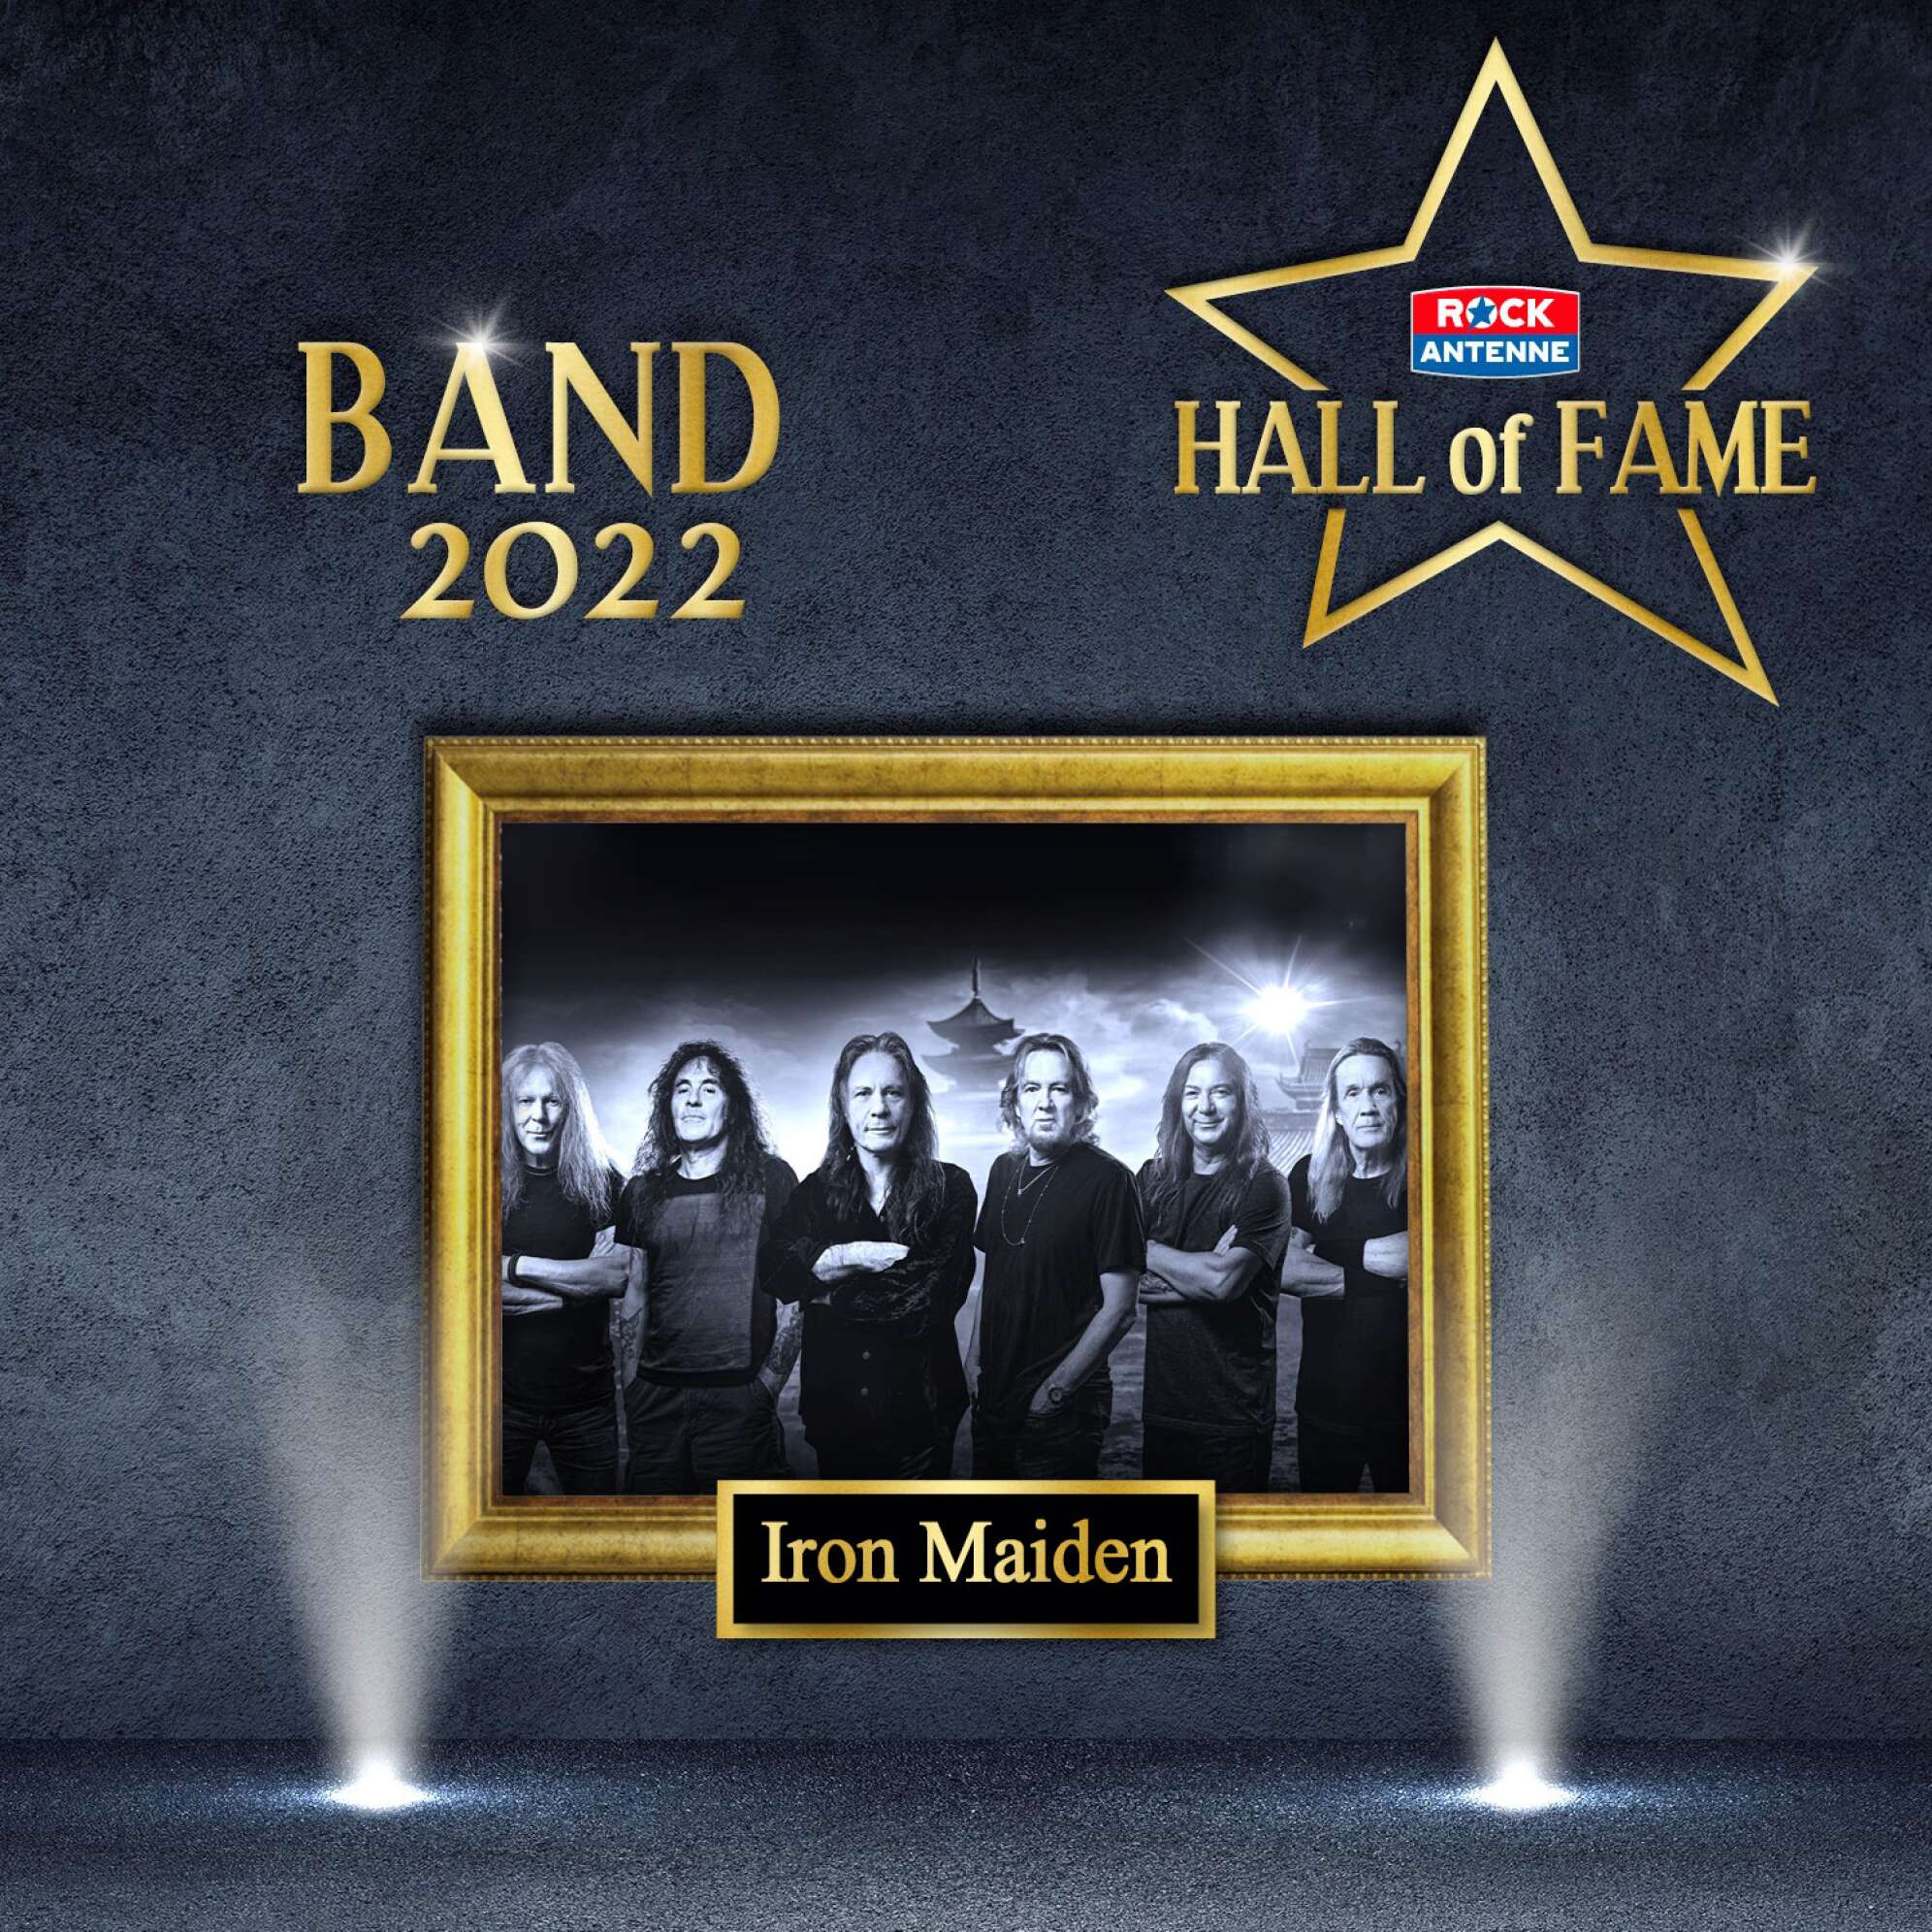 Bild der ROCK ANTENNE Hall of Fame - Gewinner Kategorie Band 2022: Iron Maiden